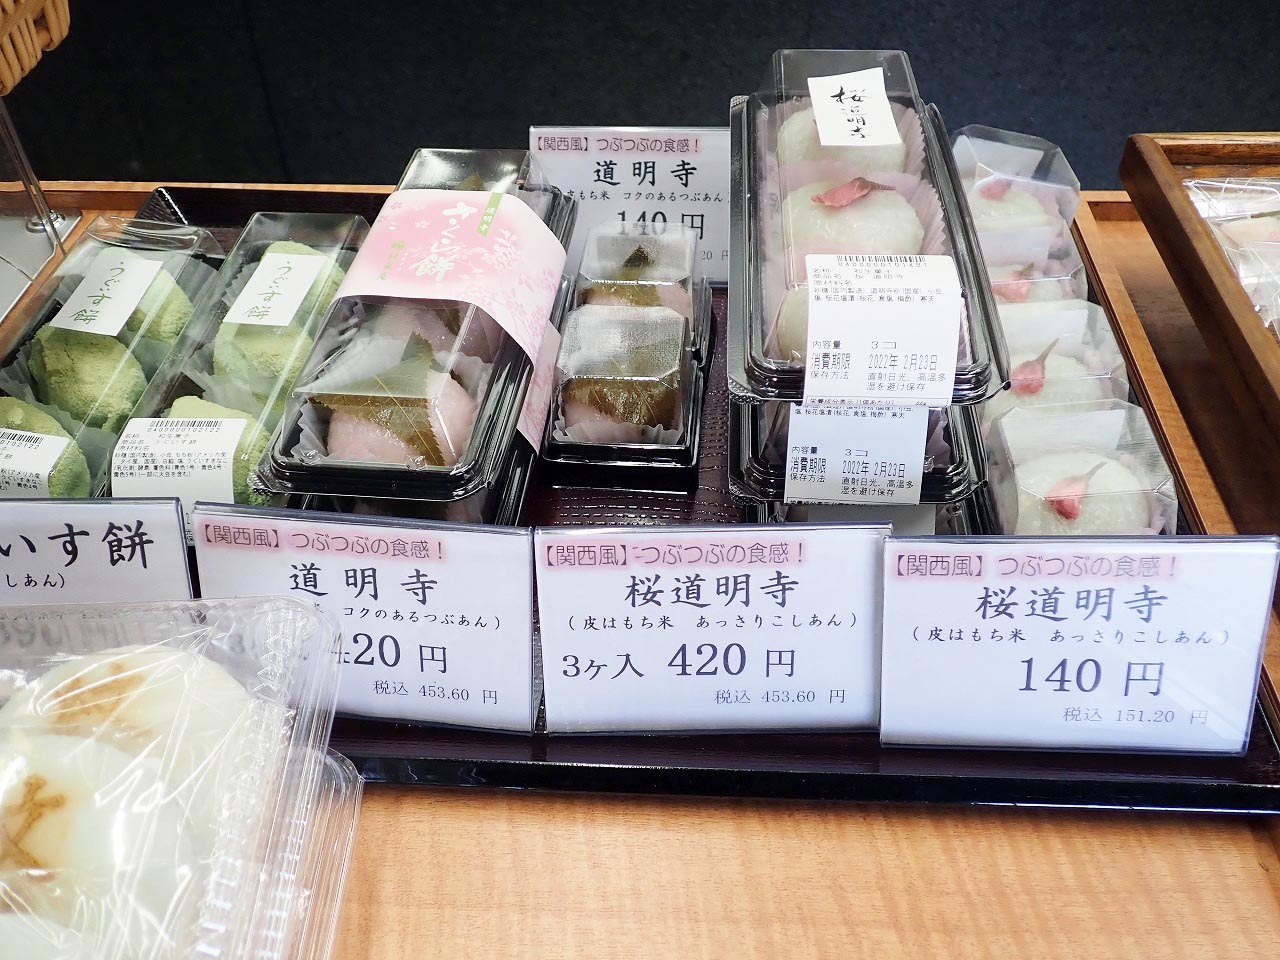 「お菓子の紋蔵庵」では道明寺と桜道明寺を販売しています